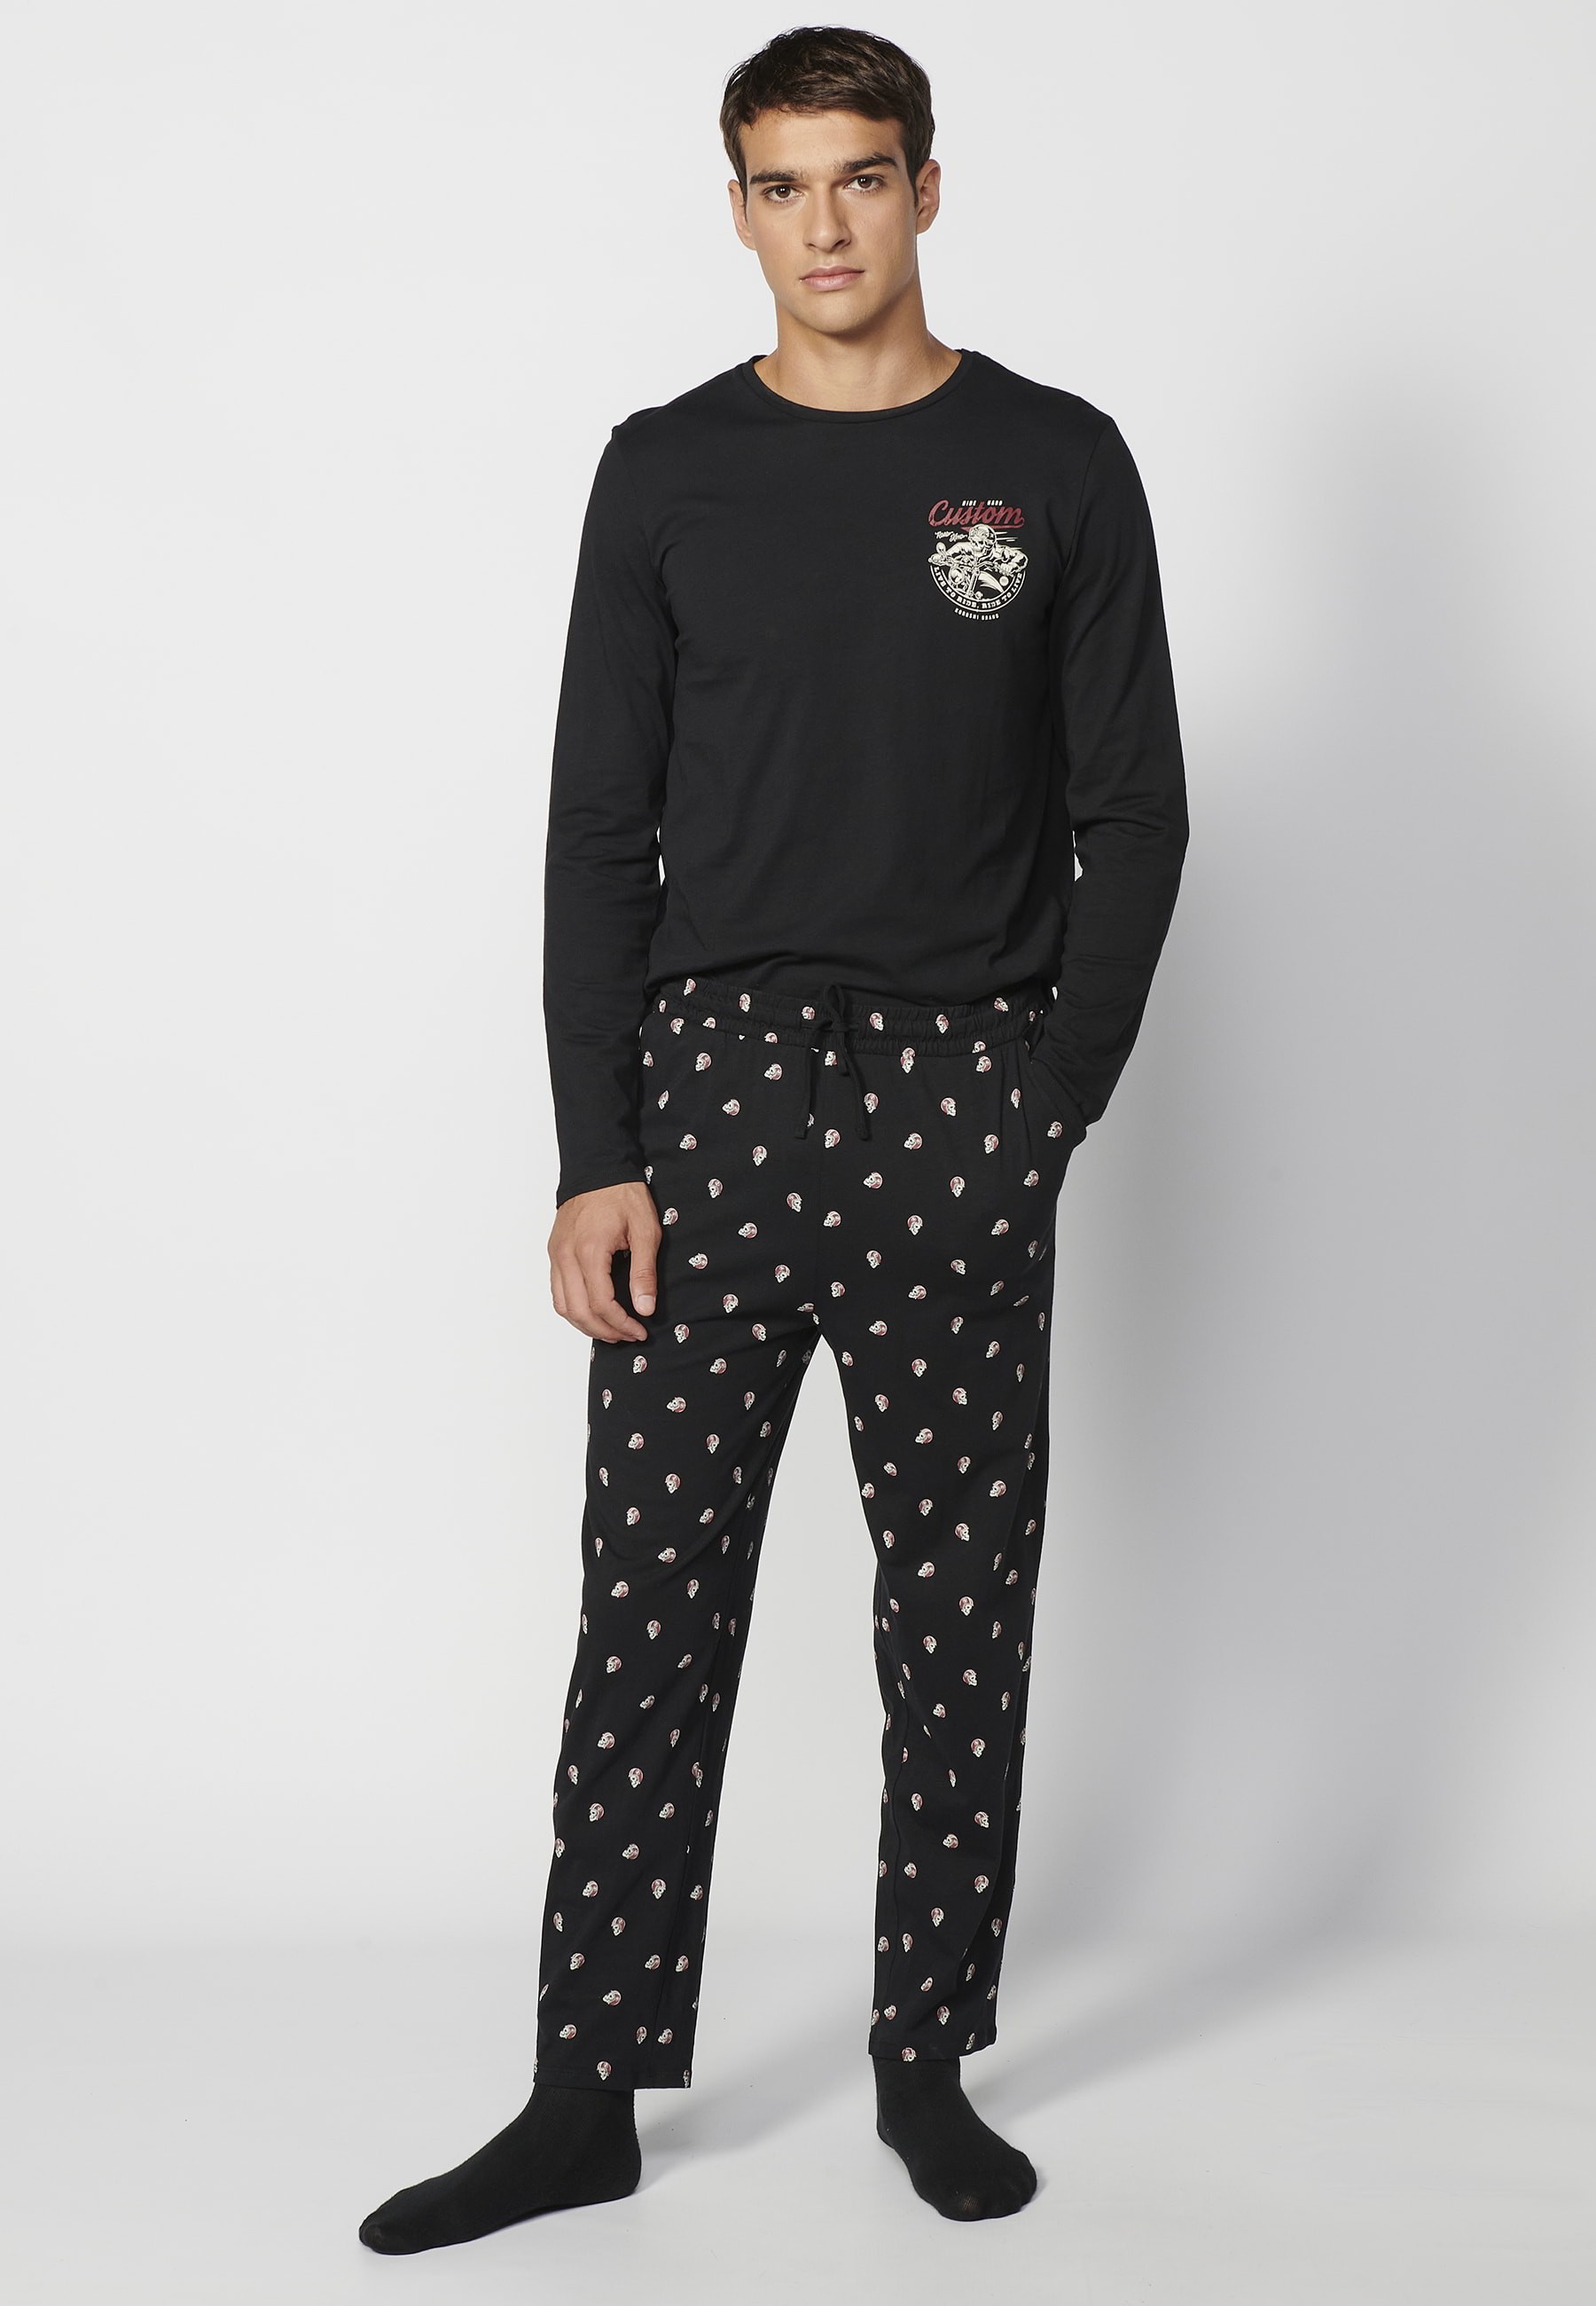 Pijama largo de algodón color Negro para hombres